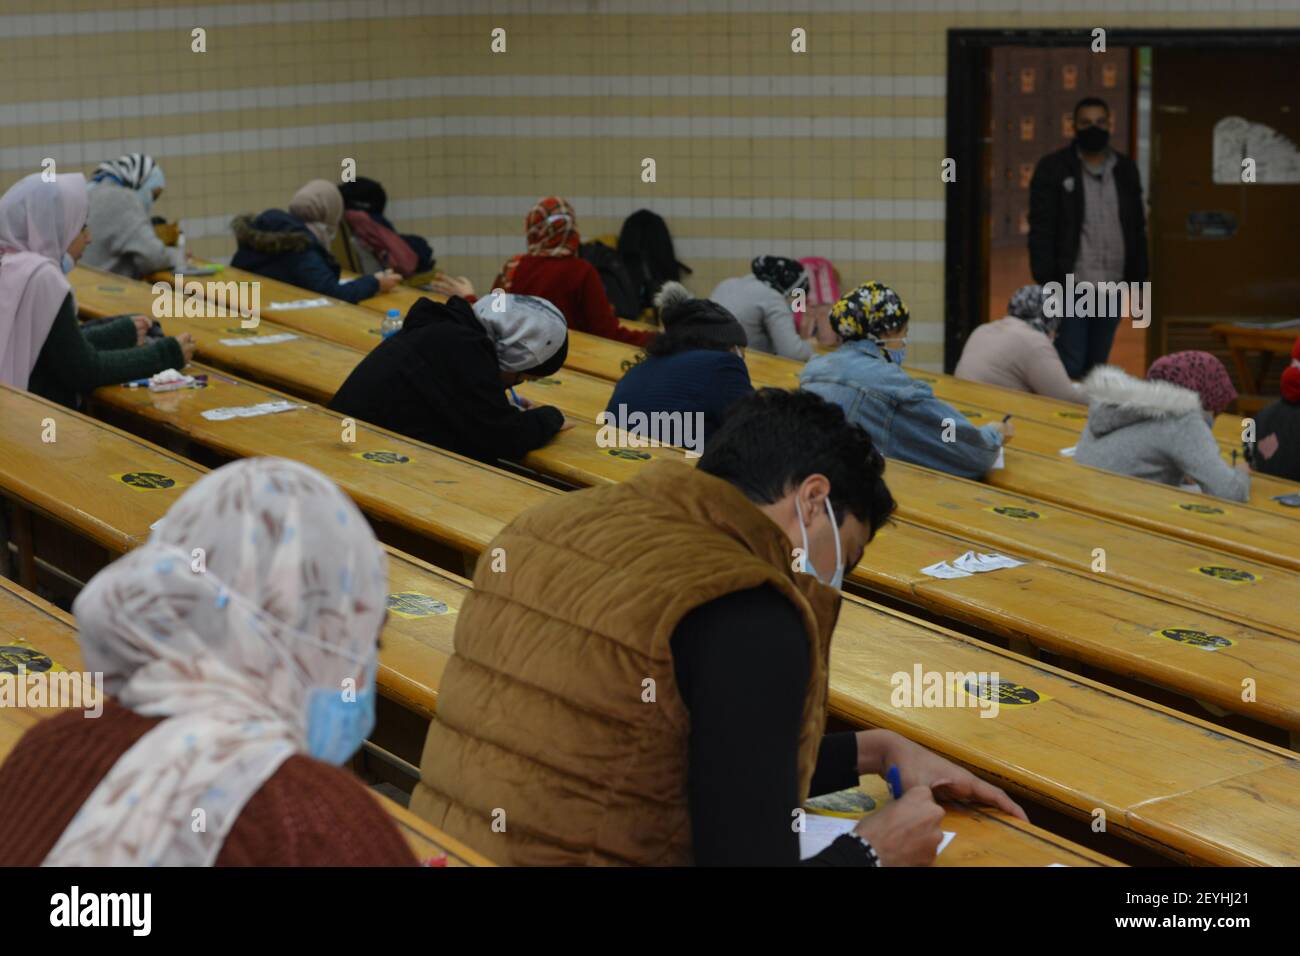 Cairo, Egitto, 4 marzo 2021, Inside guarda gli esami in Egitto in mezzo alla pandemia di Covid-19, gli studenti si tengono esami in classe. Foto Stock